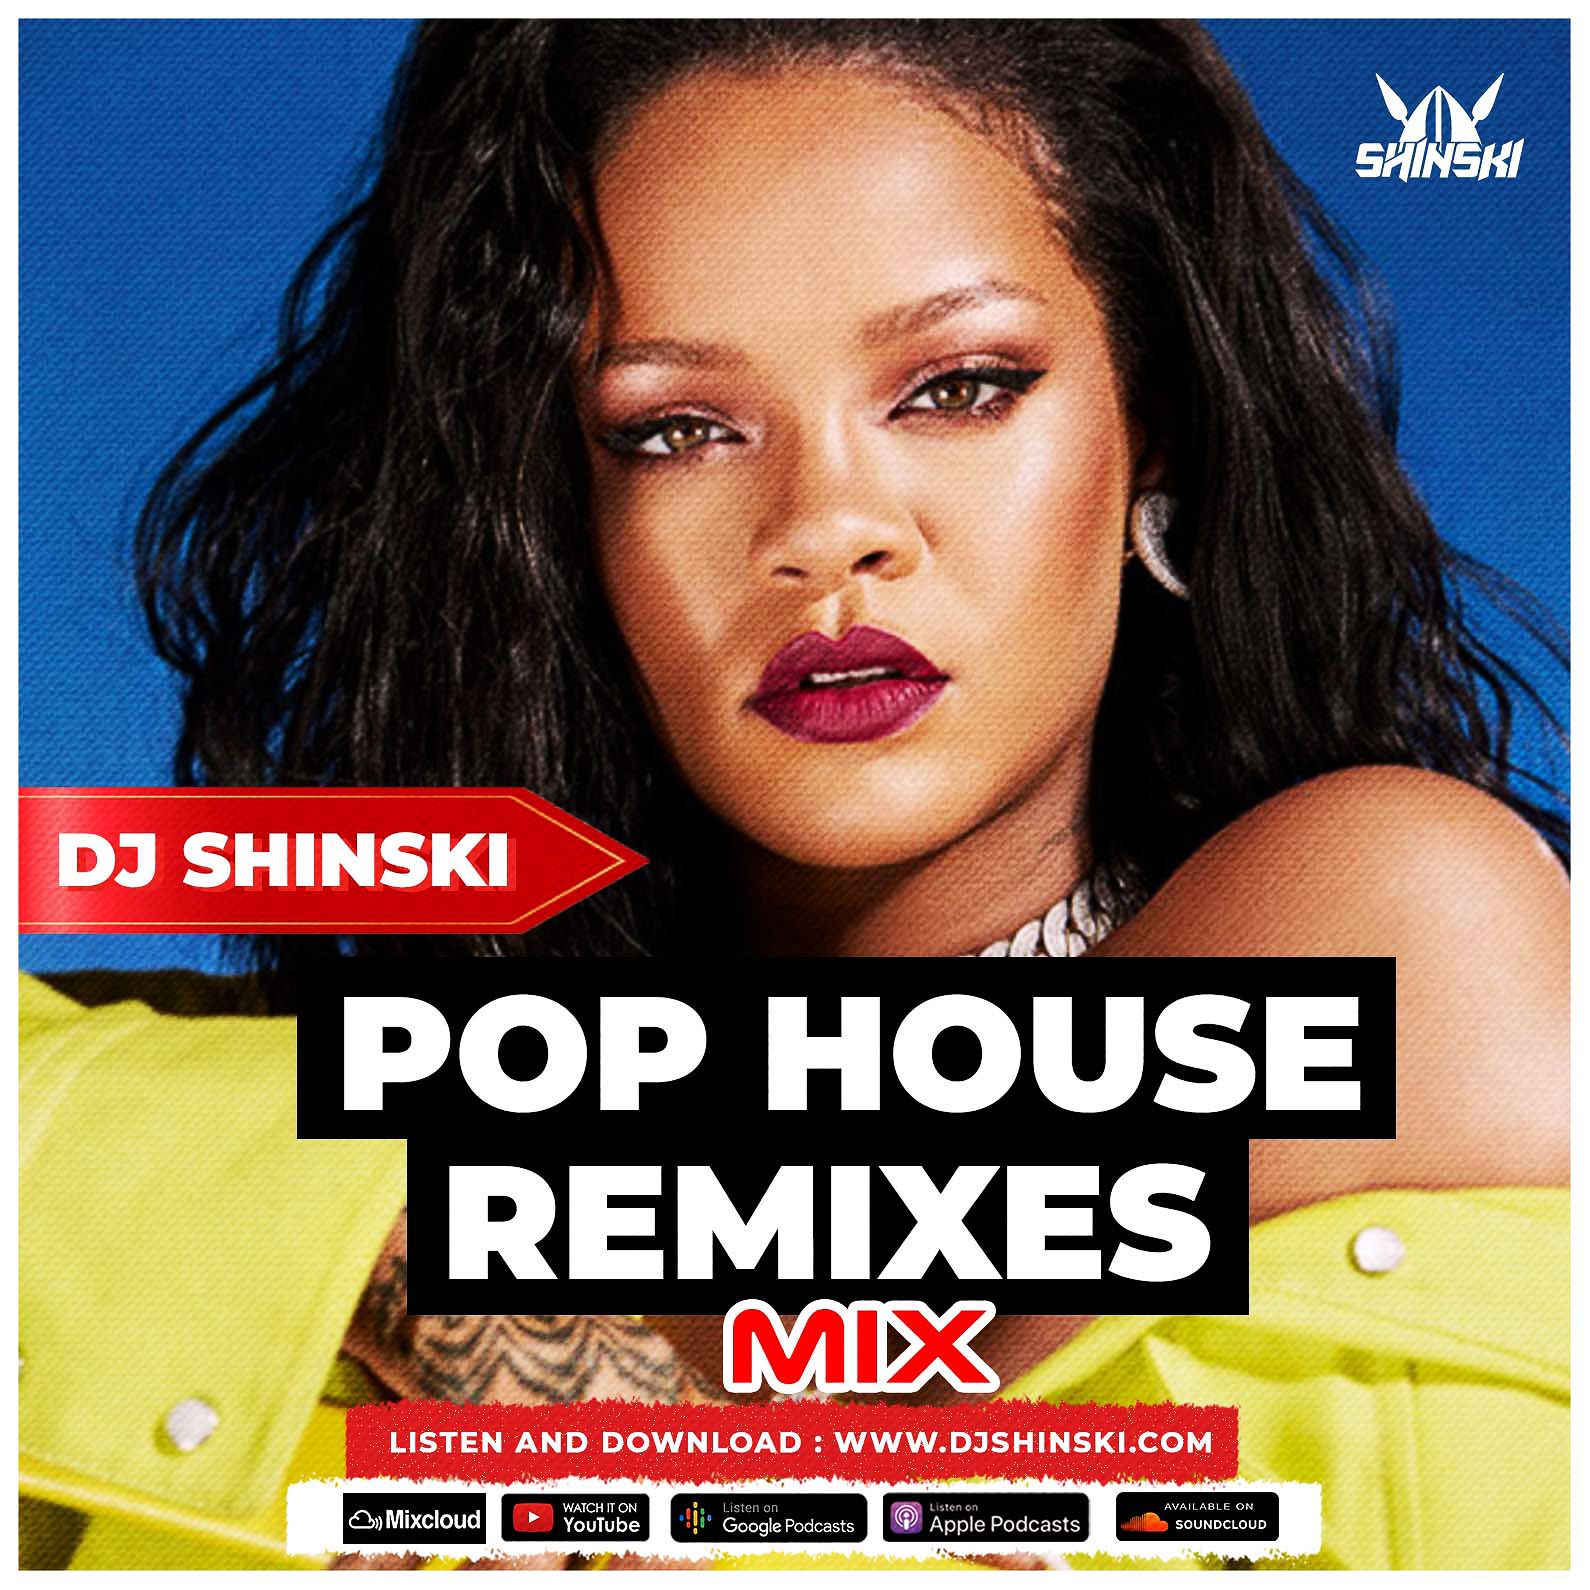 डाउनलोड करा Best of Popular Pop House remixes 2022 Mix [Beyonce, Rihanna, Drake, Pepas, Ne-yo, David Guetta]